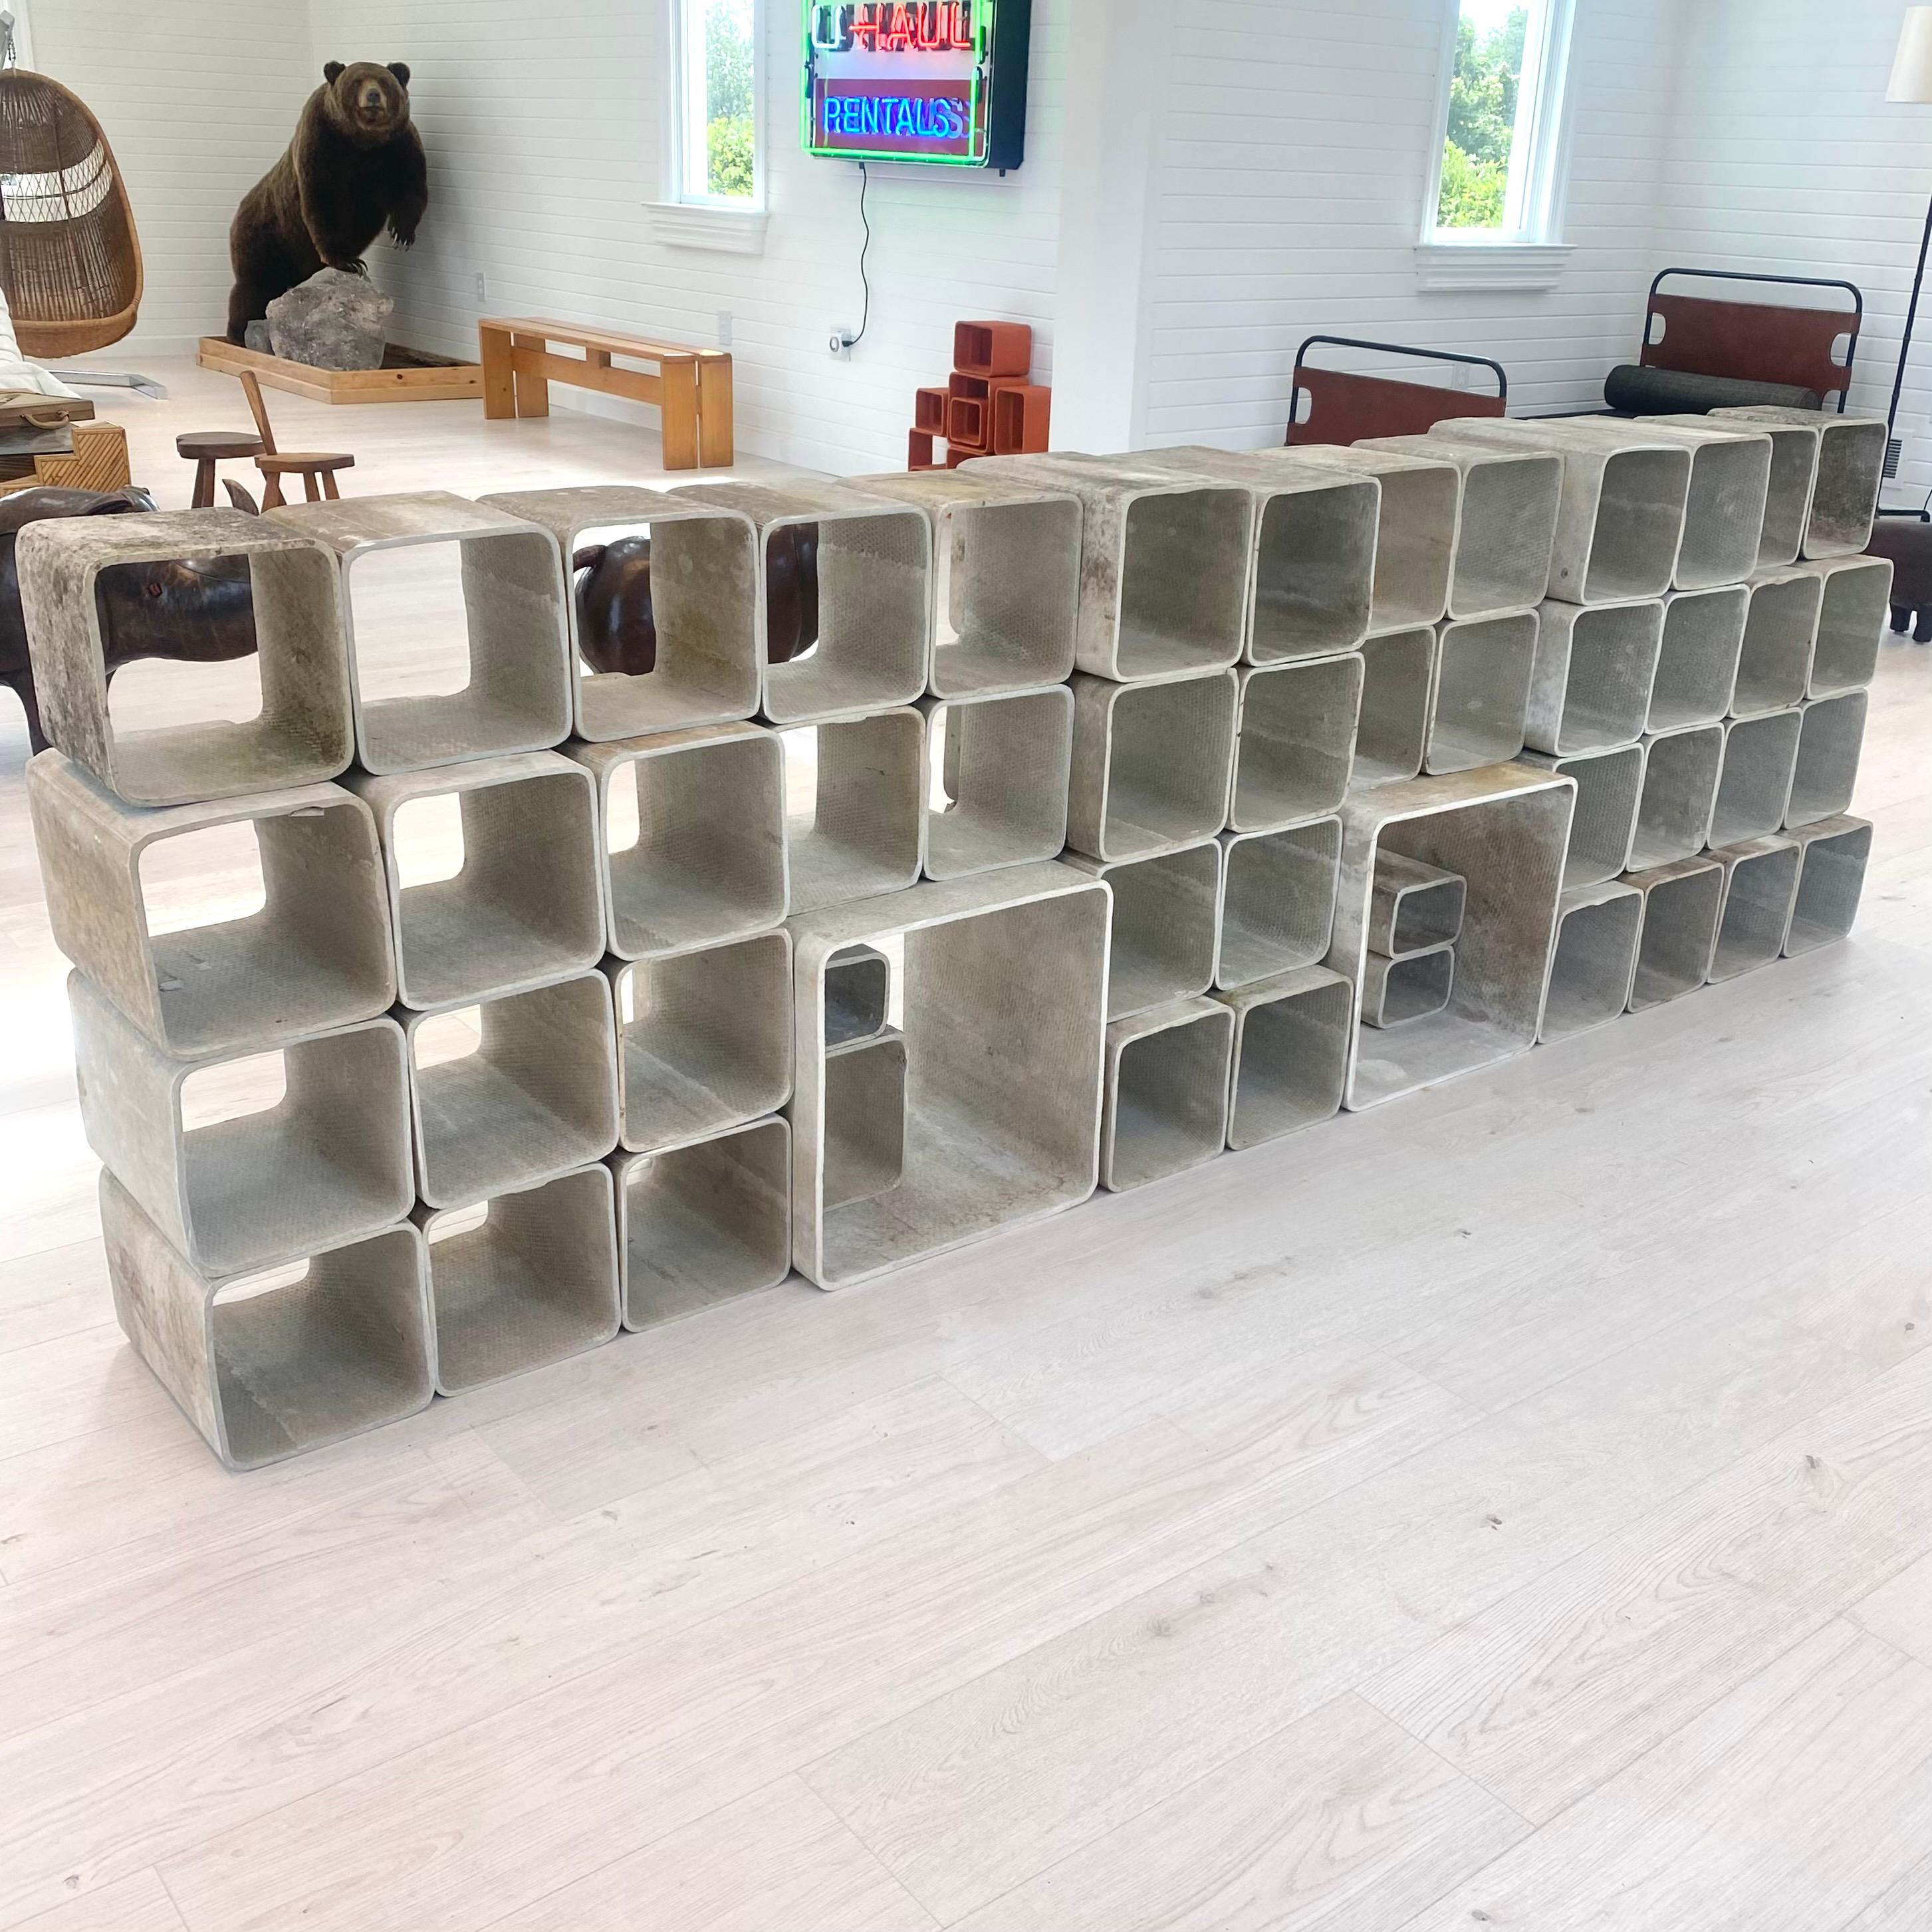 Atemberaubendes monumentales 50-teiliges Bücherregal aus Beton von Willy Guhl. Besteht aus 4 handgefertigten Betonwürfeln unterschiedlicher Größe. Vollständig modular und auf vielfältige Weise arrangierbar. Originale Betonfarbe. Unterschiedliche